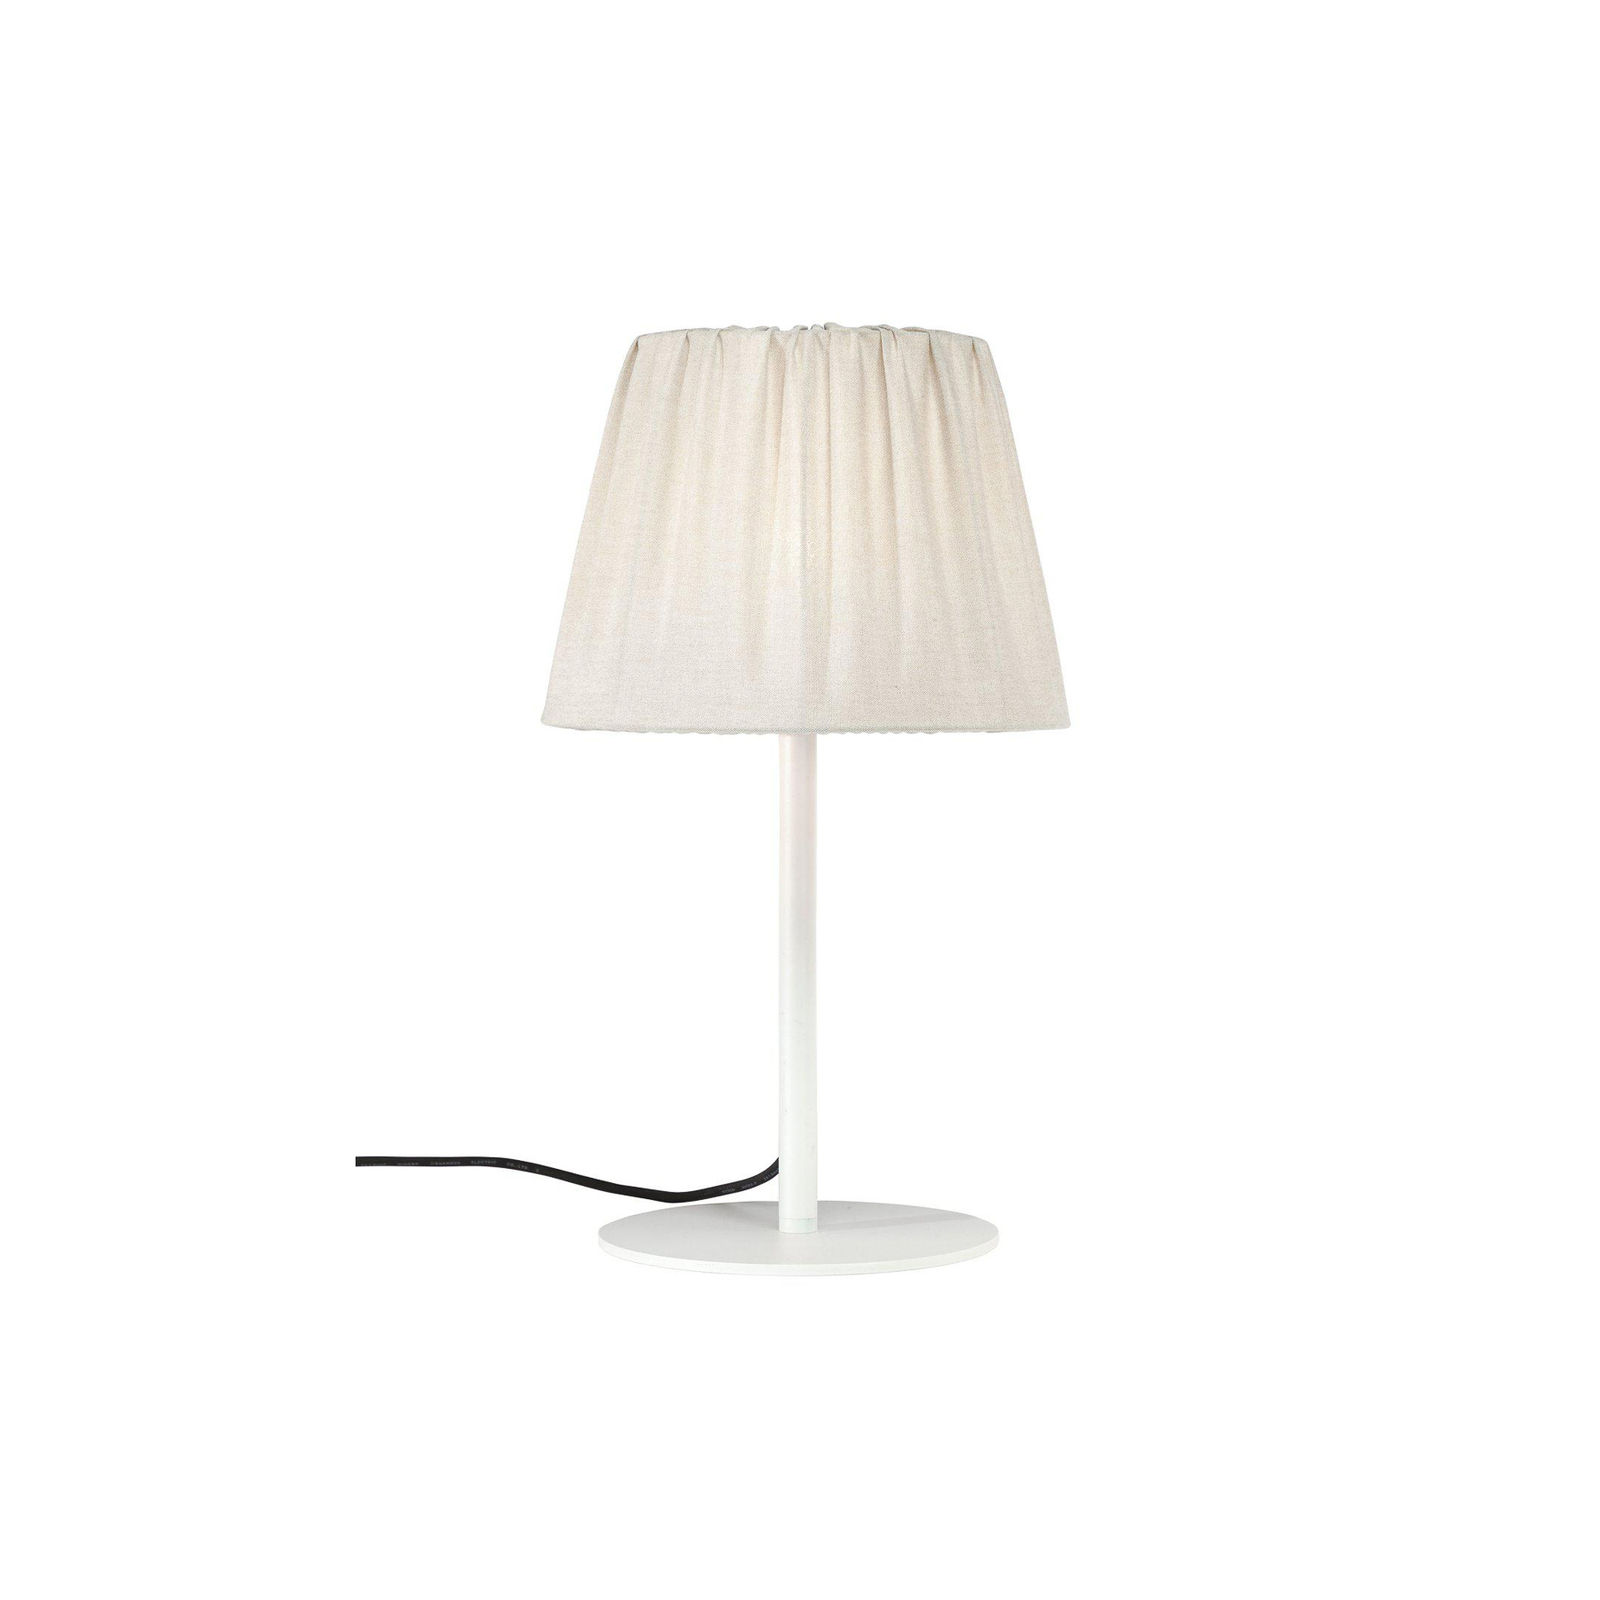 PR Home zewnętrzna lampa stołowa Agnar, biały/beżowy, 57 cm